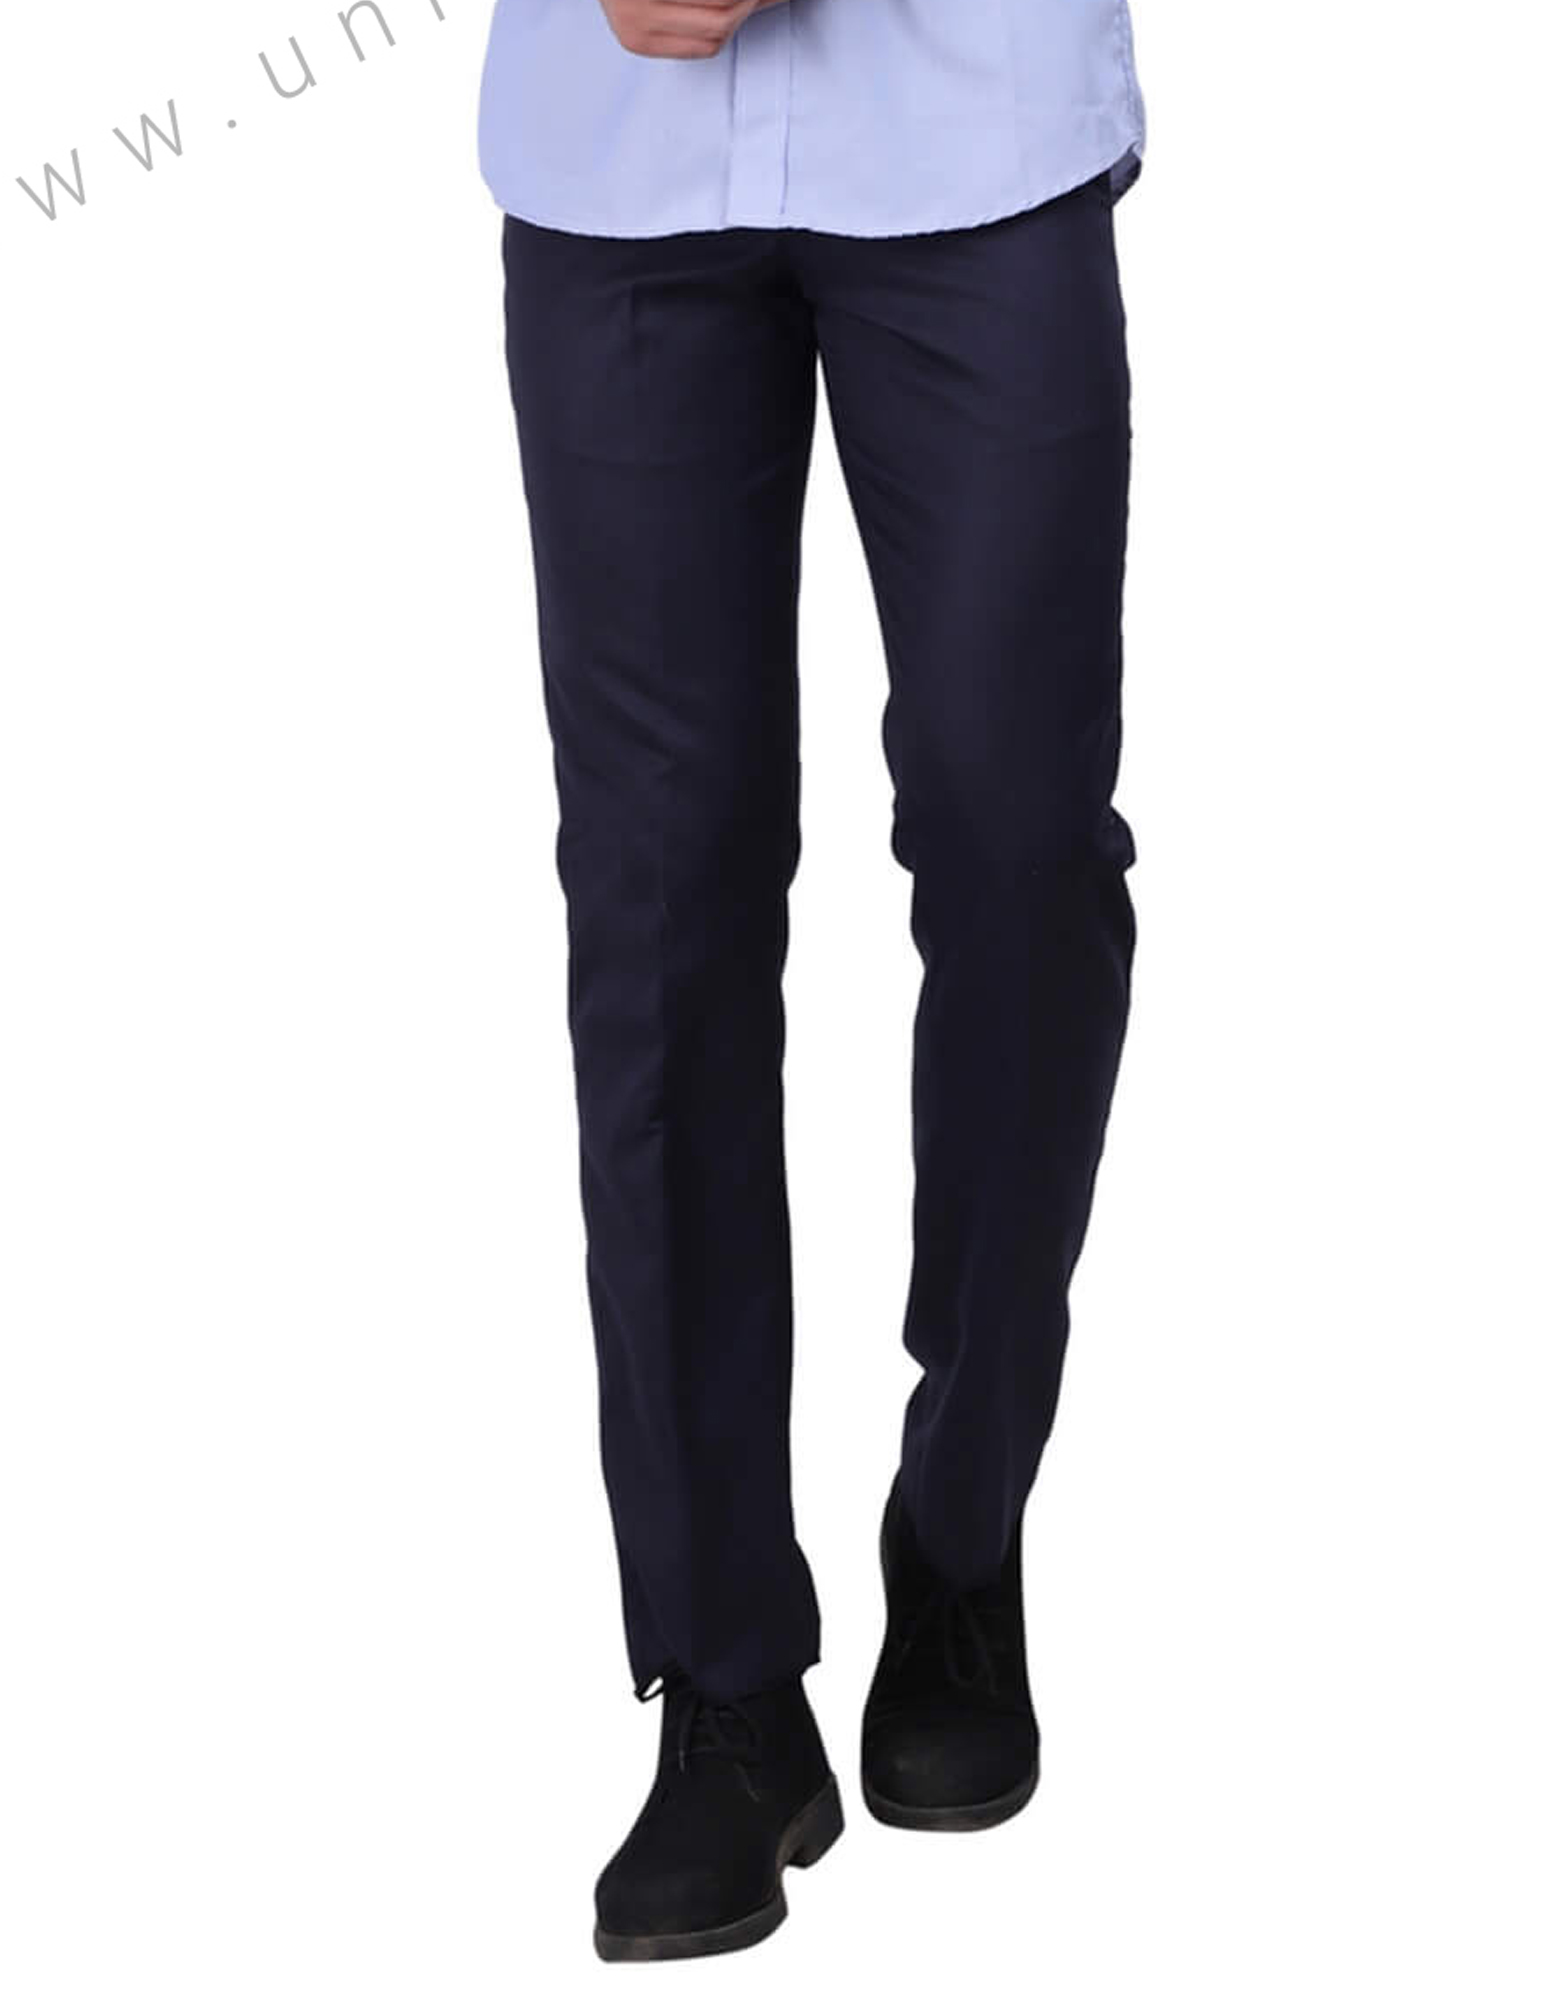 Buy Men Beige Solid Slim Fit Formal Trousers Online - 735606 | Peter England